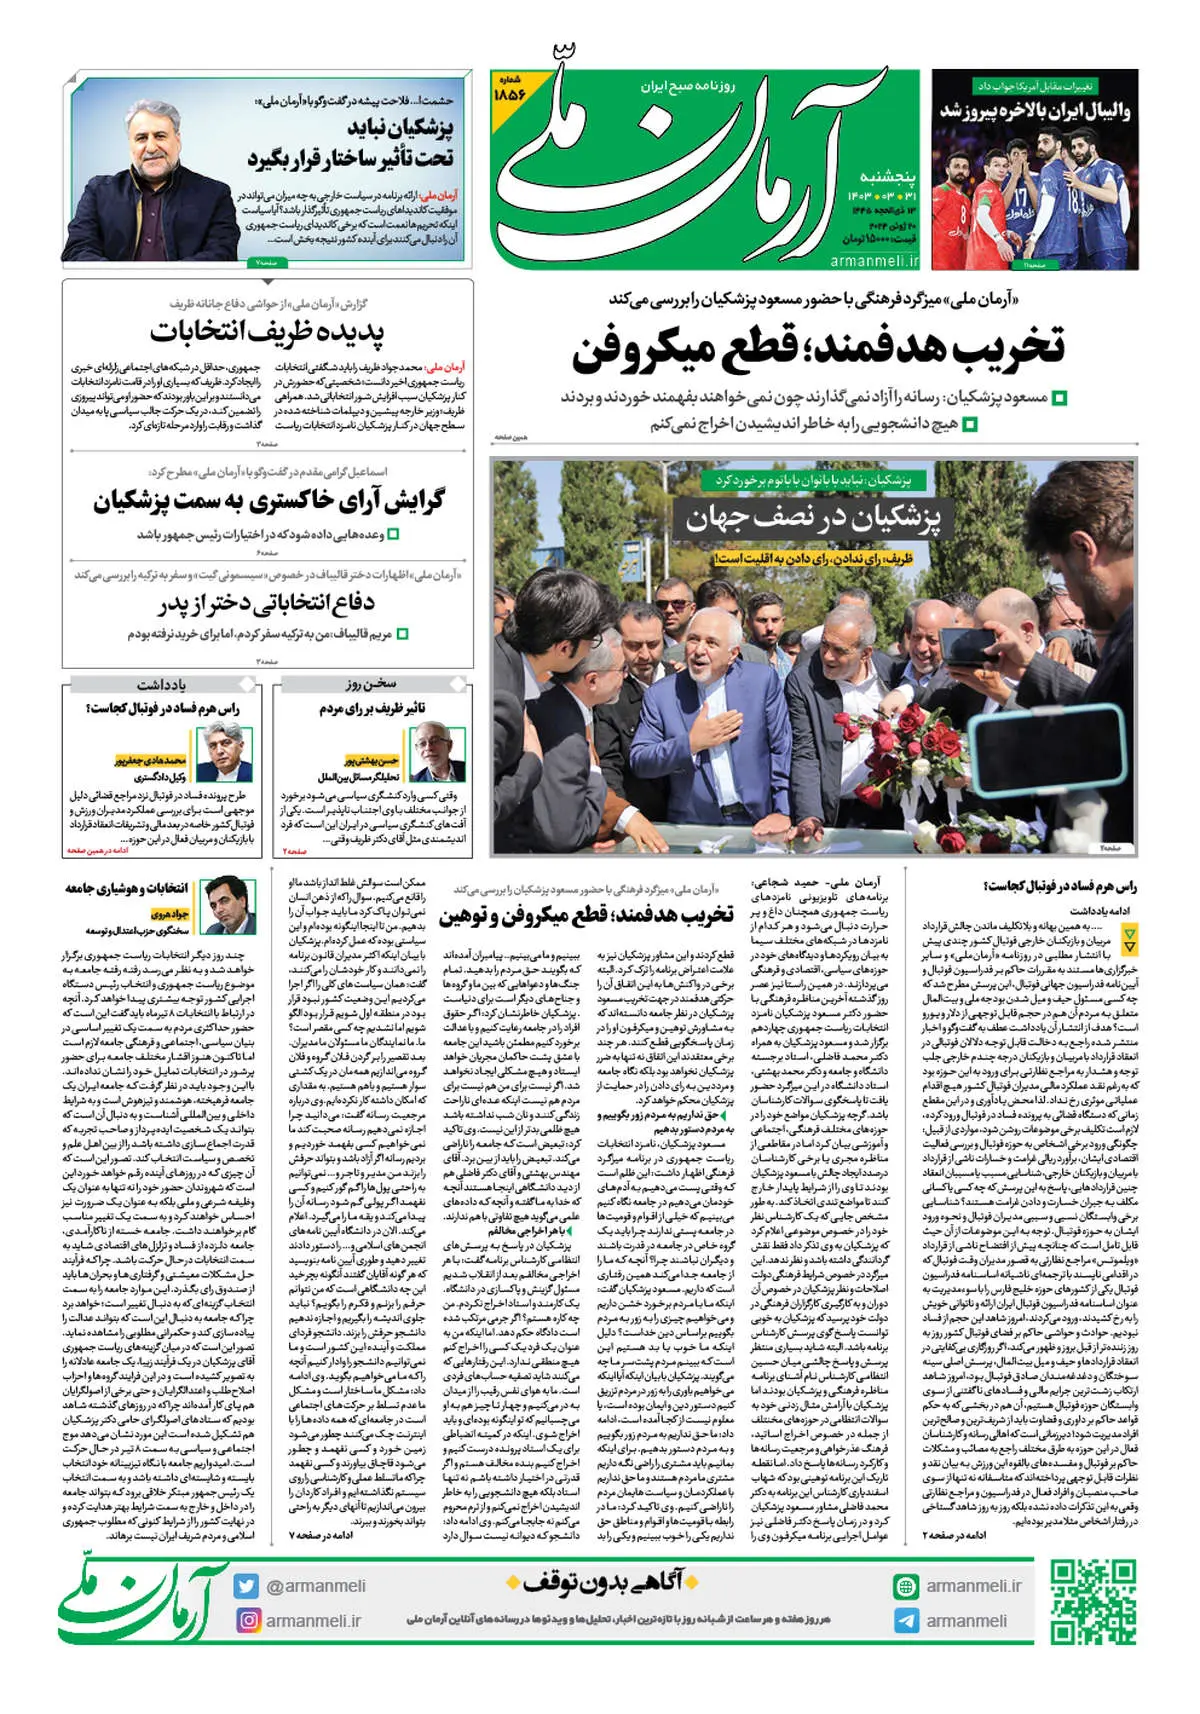 روزنامه آرمان ملی - پنجشنبه 31 خرداد - شماره 1856 